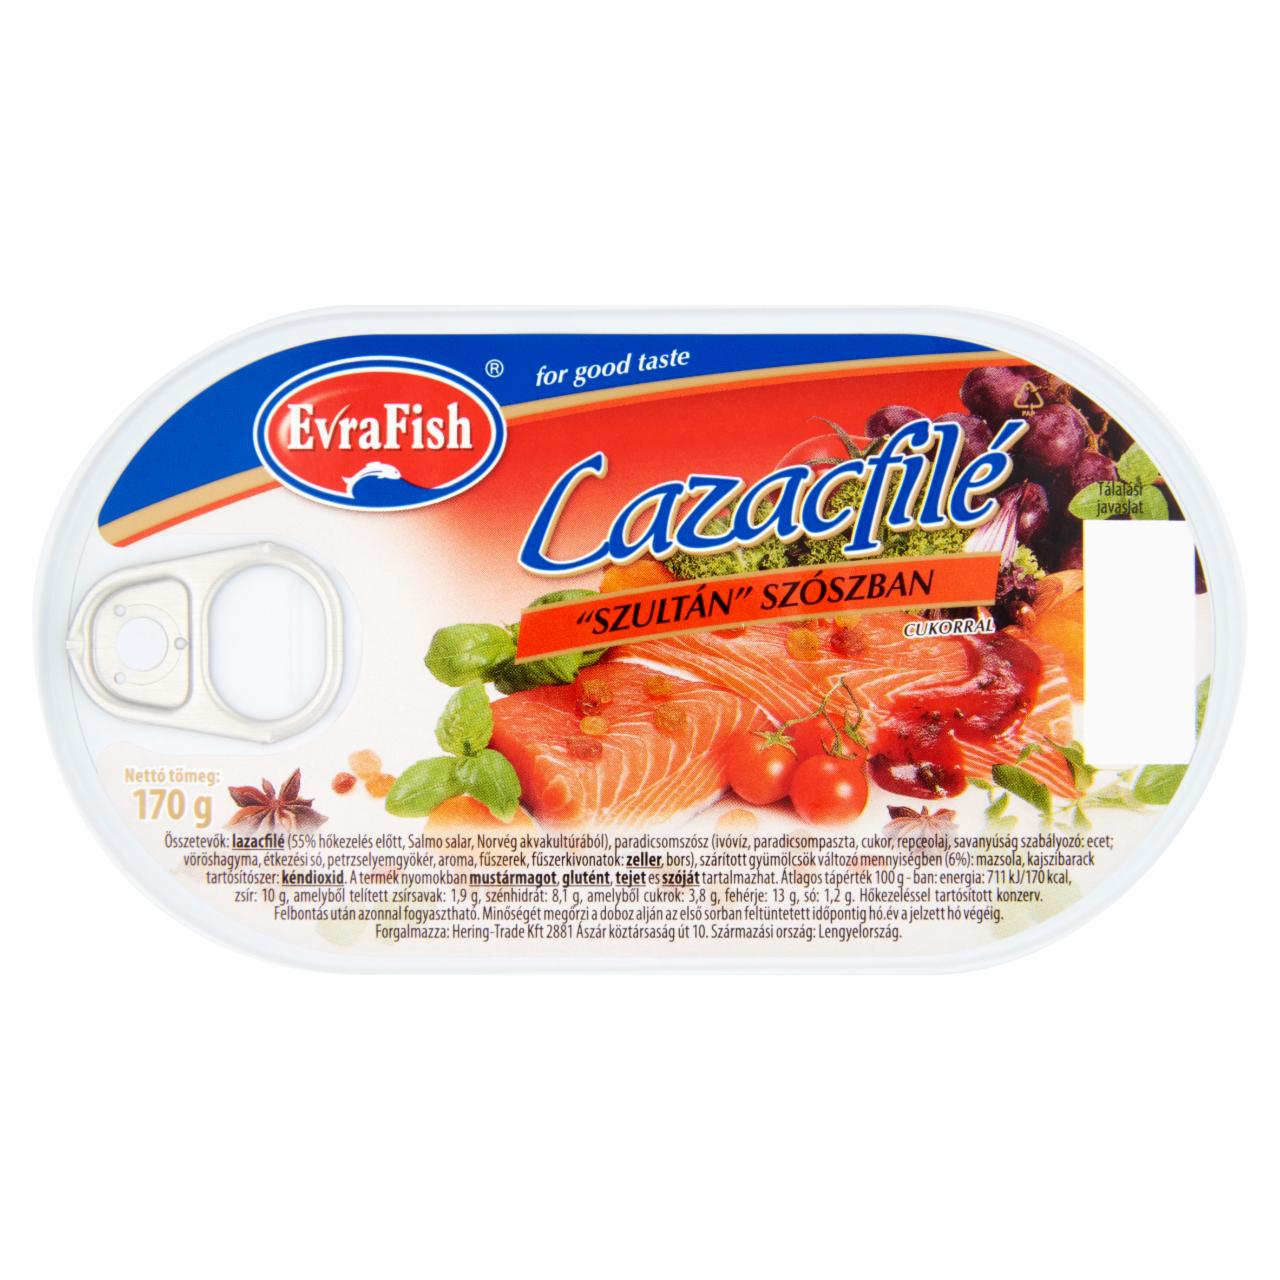 Képek - Evrafish lazacfilé szultán szószban cukorral 170 g